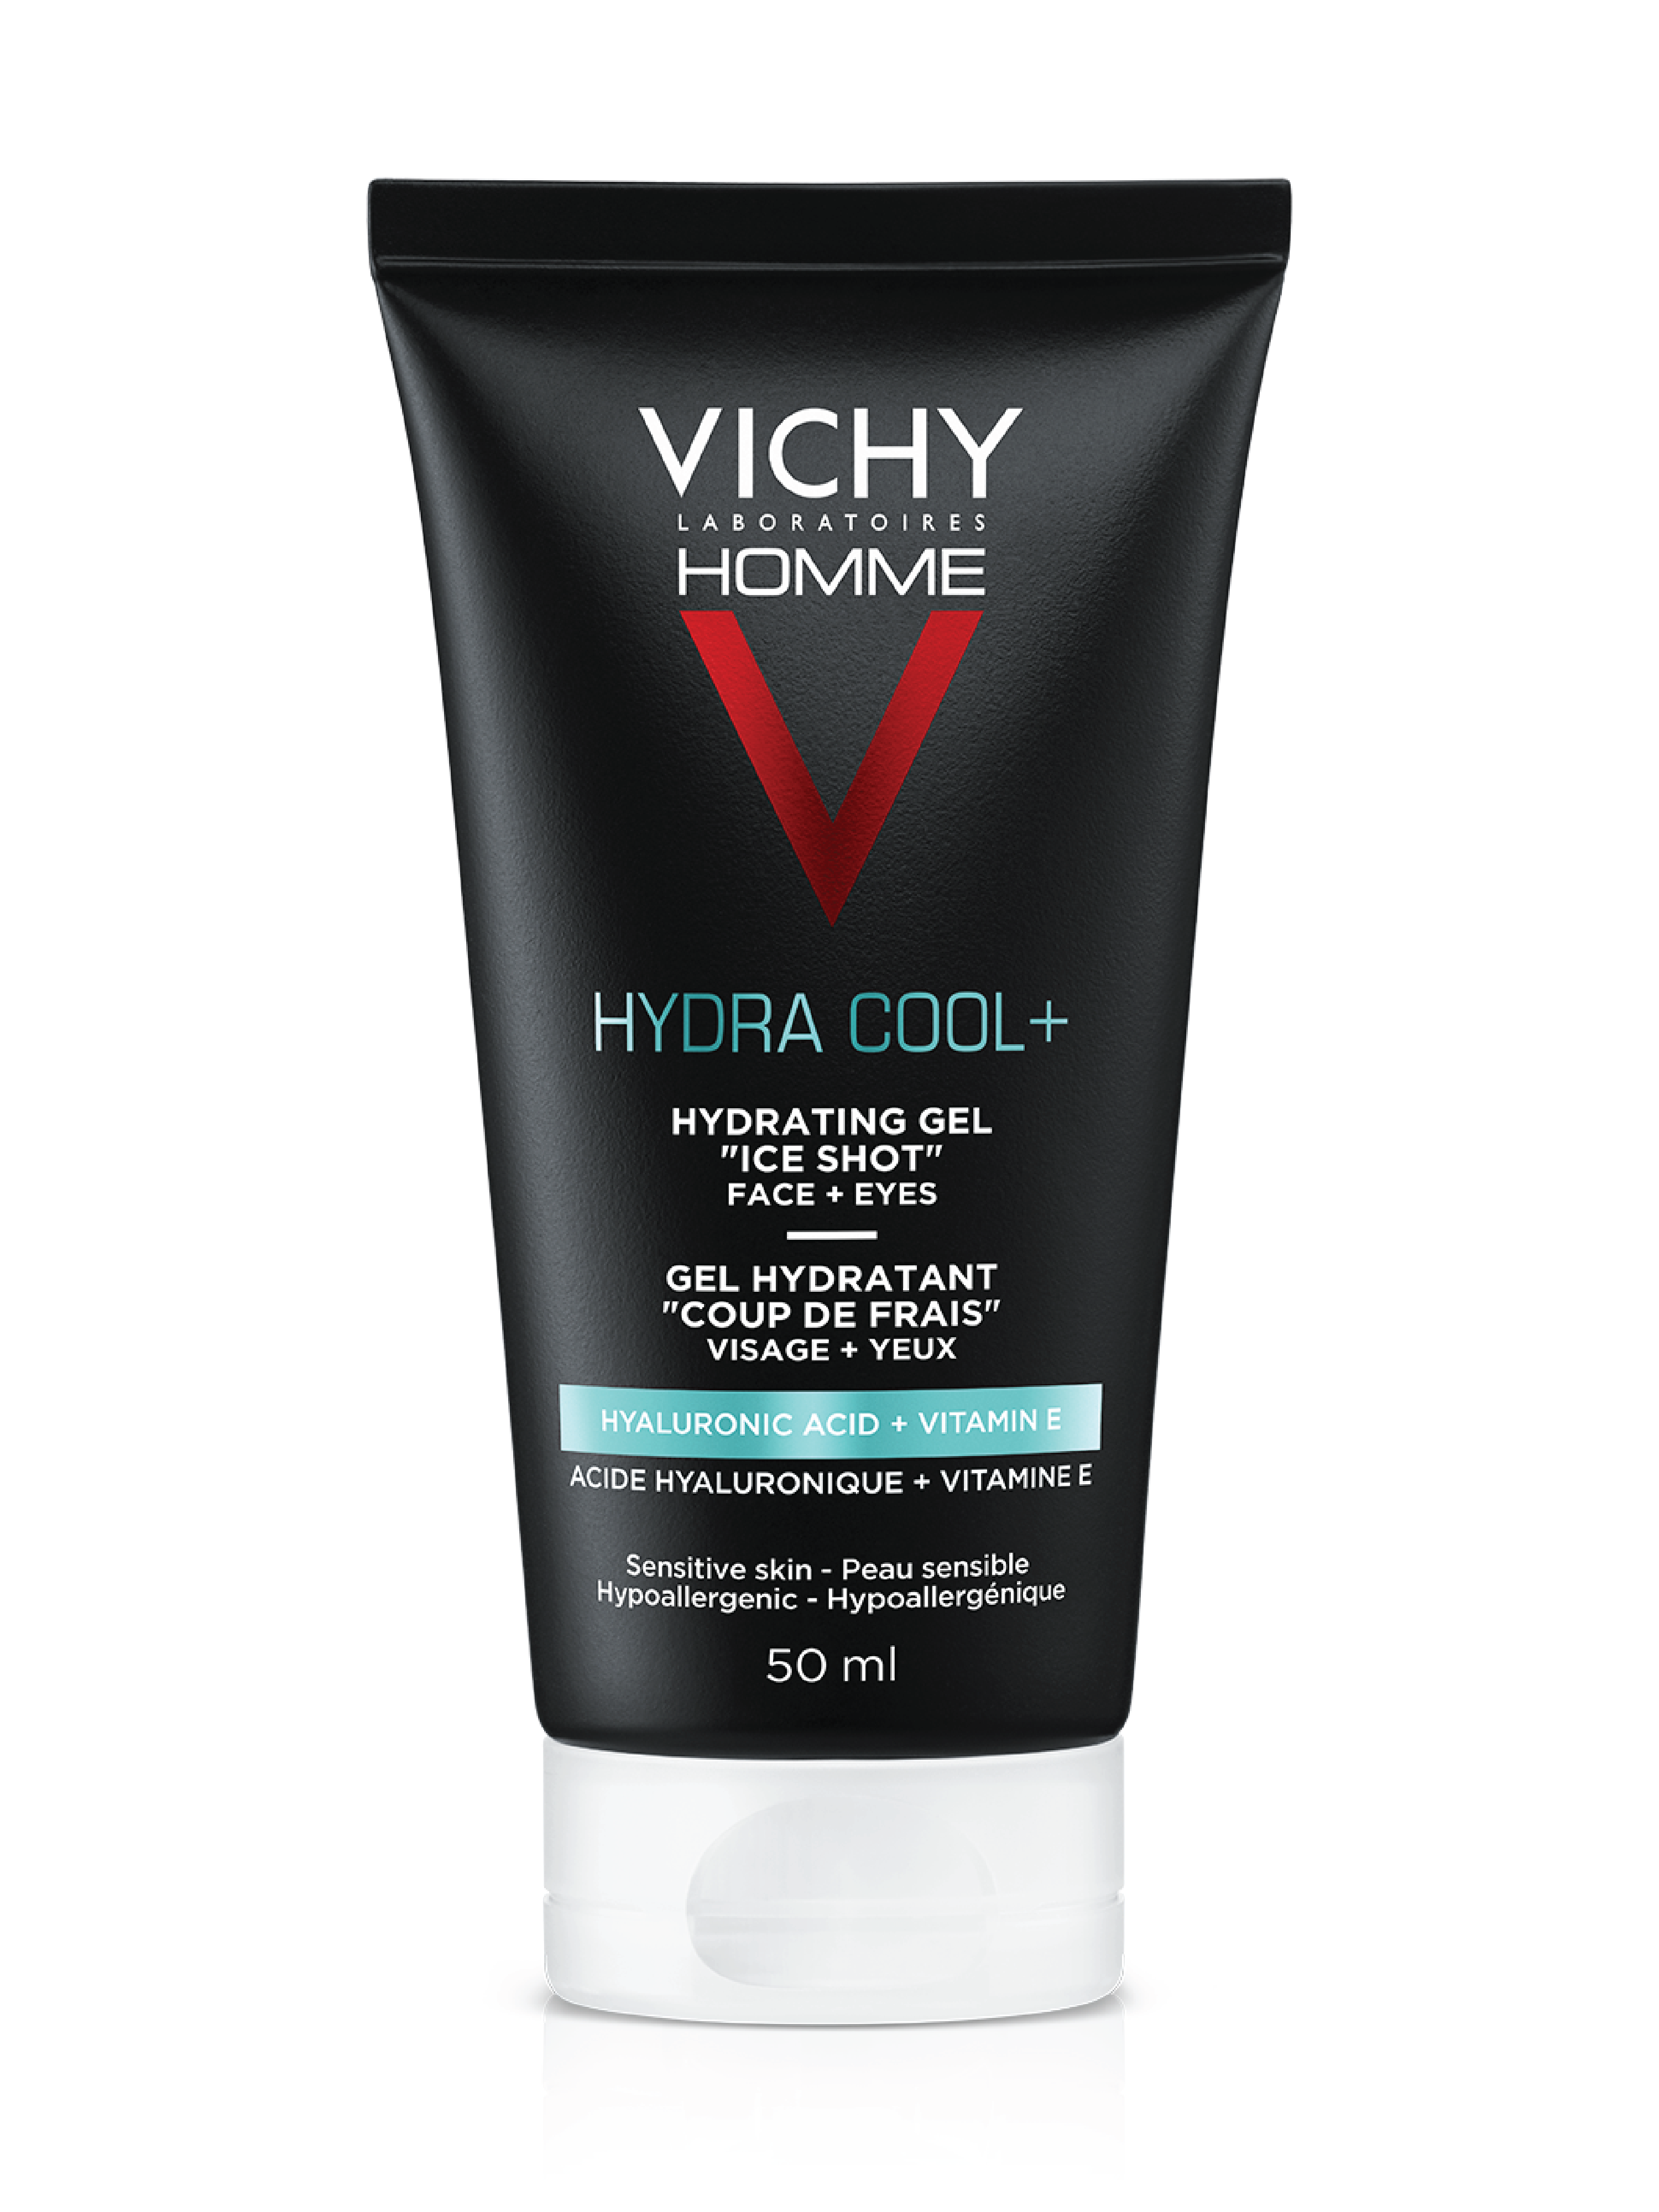 Vichy Homme Hydra Cool+ Gel, 50 ml